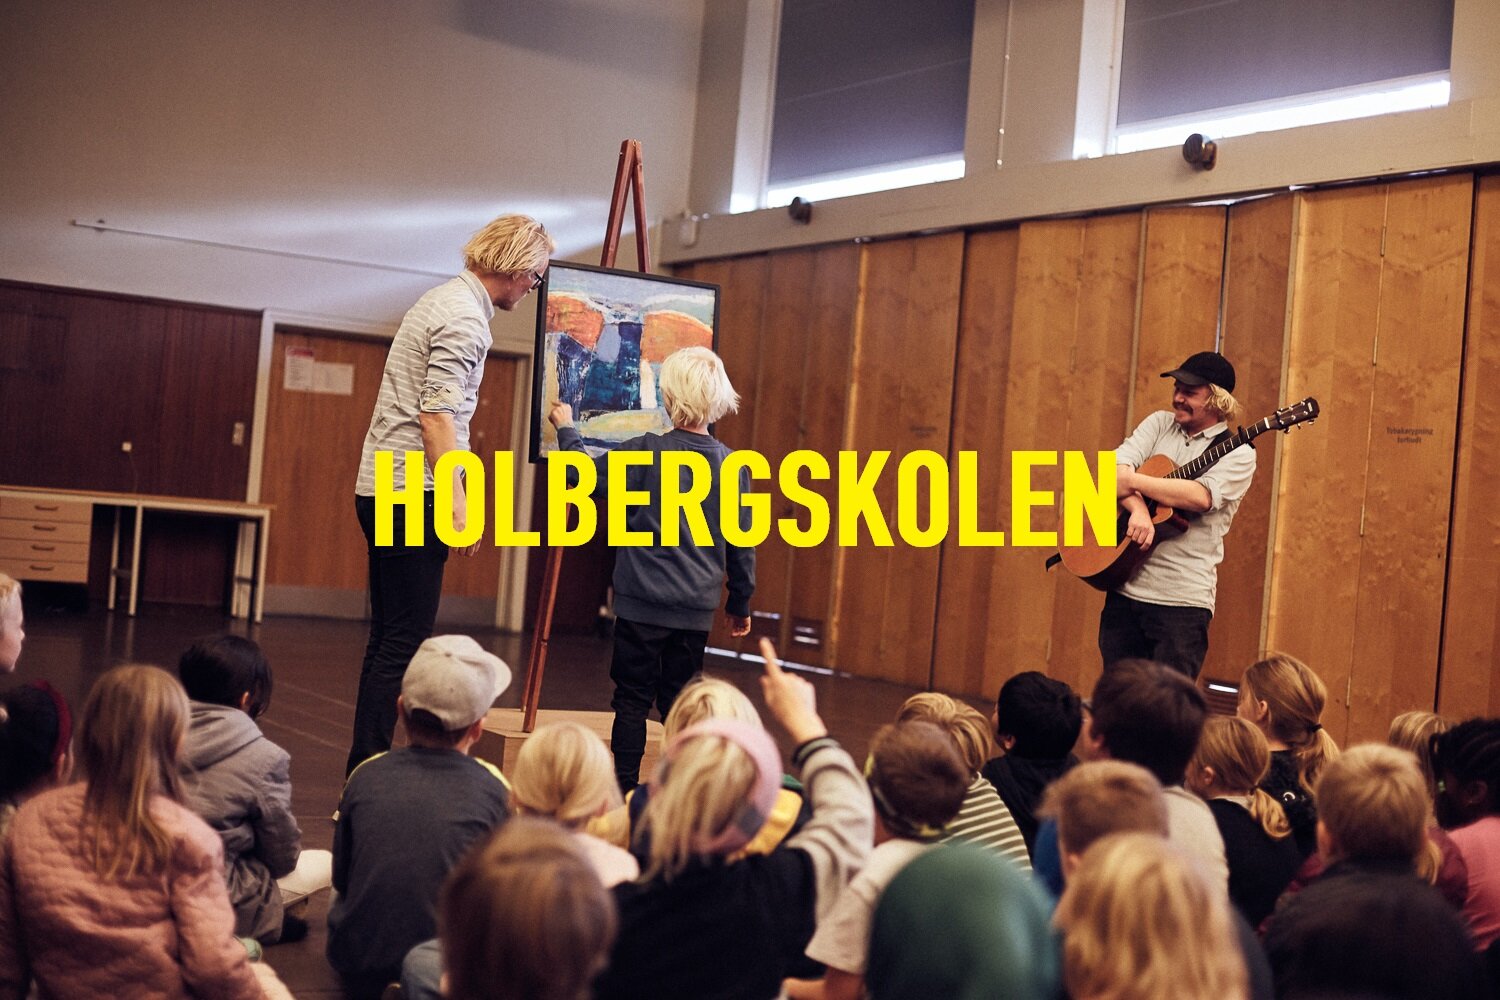 05_Søren Mølstrøm - skolemalerier - web72dpi1500px_TEKST.jpg